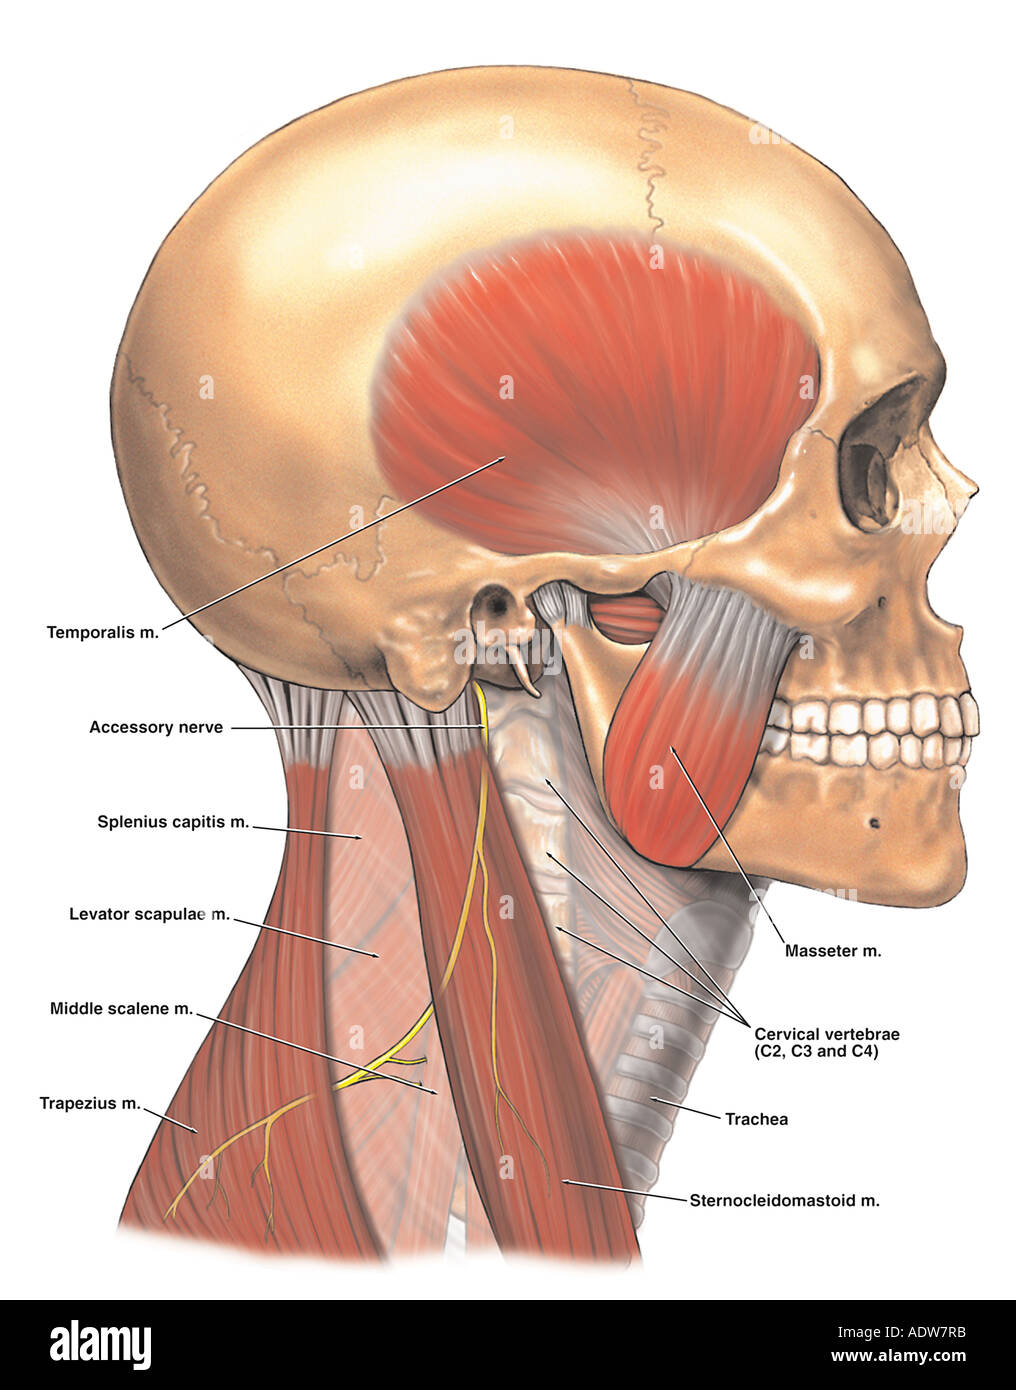 Anatomía del nervio accesorio espinal Foto de stock